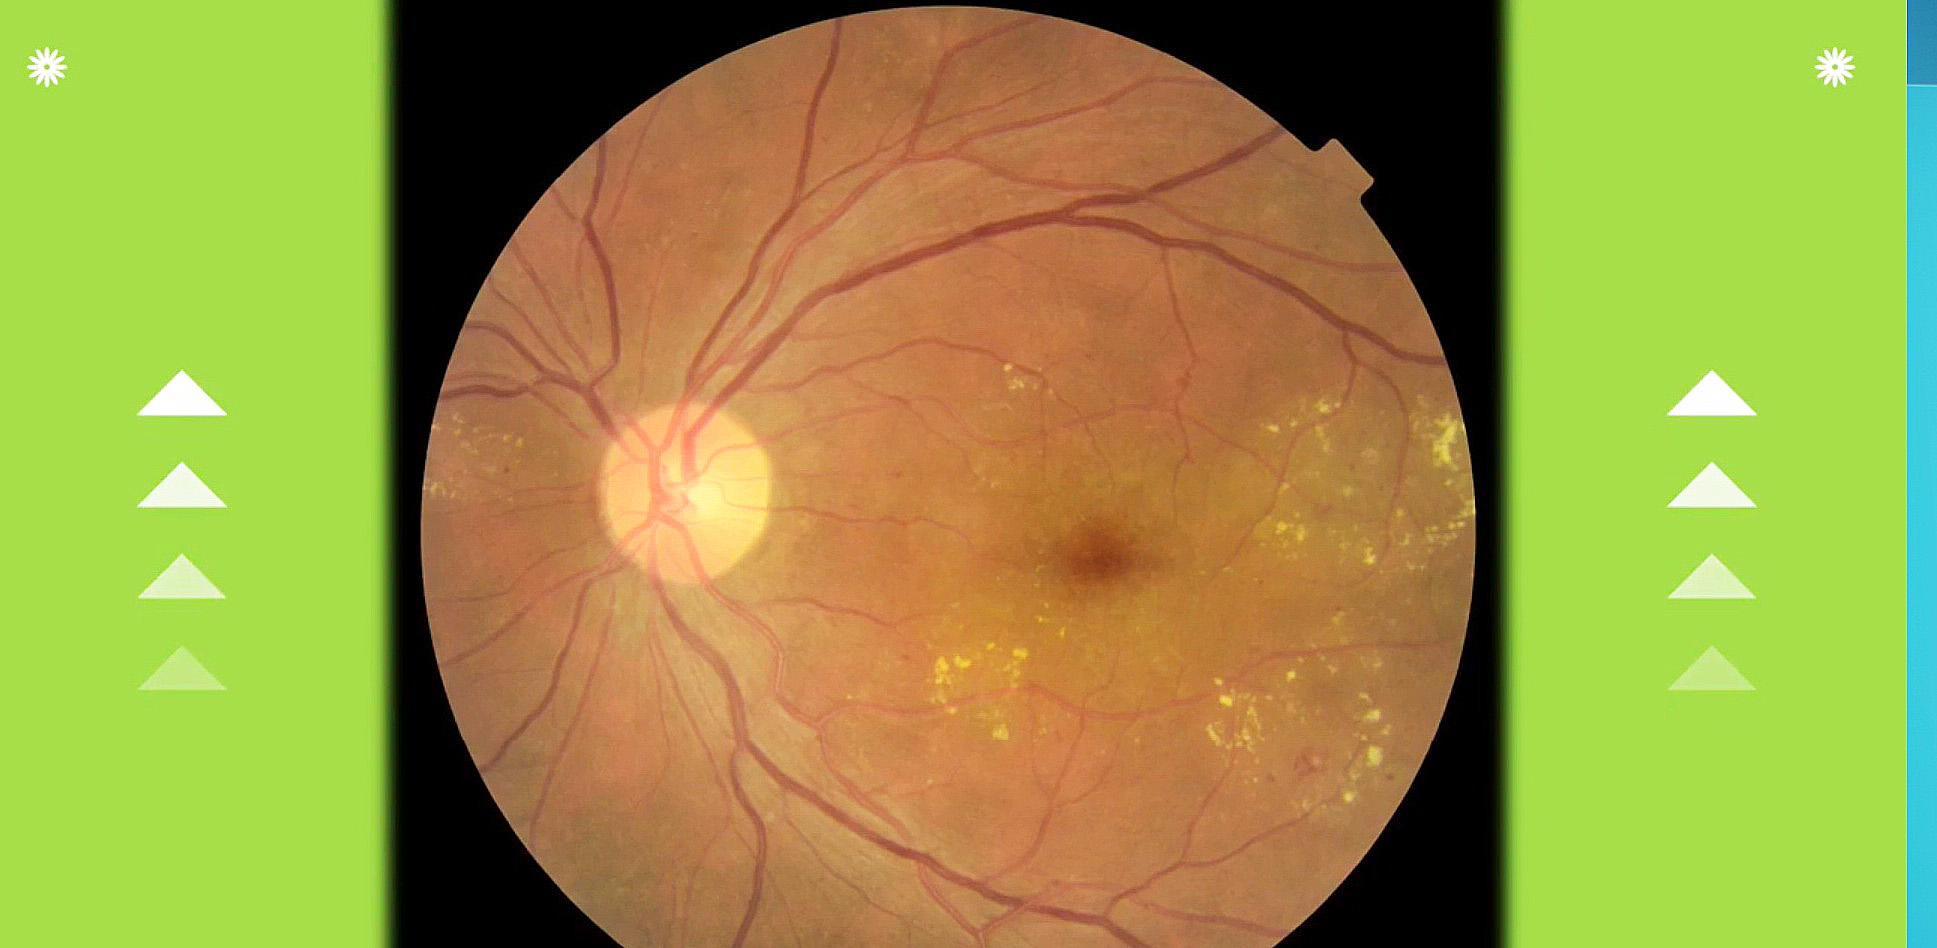 通過分析眼底照片，可以得知身體健康狀況，包括眼疾以至心腦血管疾病等先兆。（瞳訊醫療國際圖片）